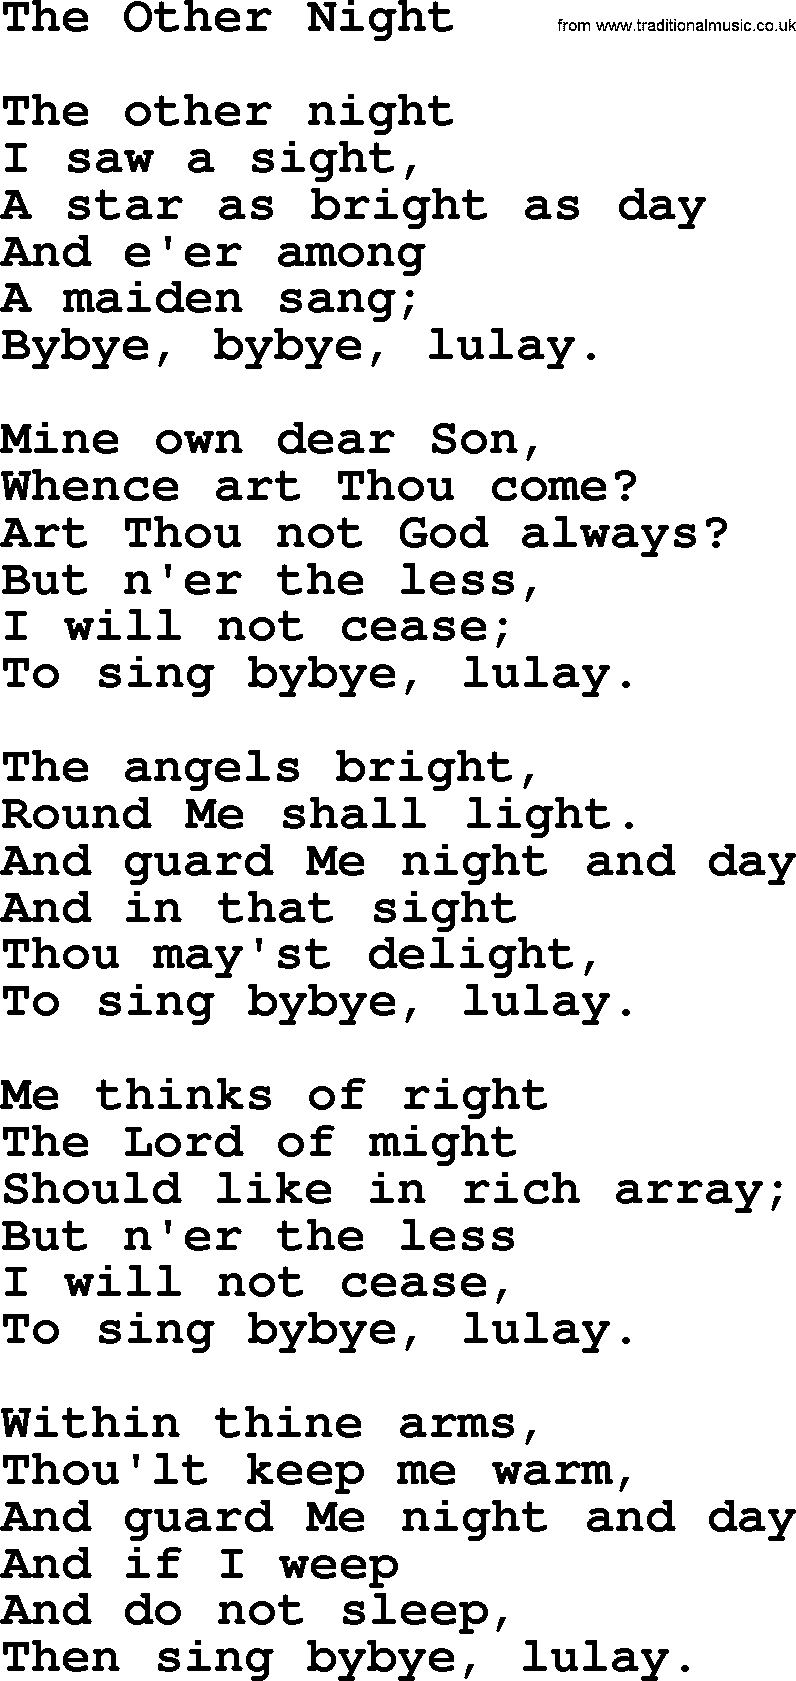 Catholic Hymn: The Other Night lyrics with PDF